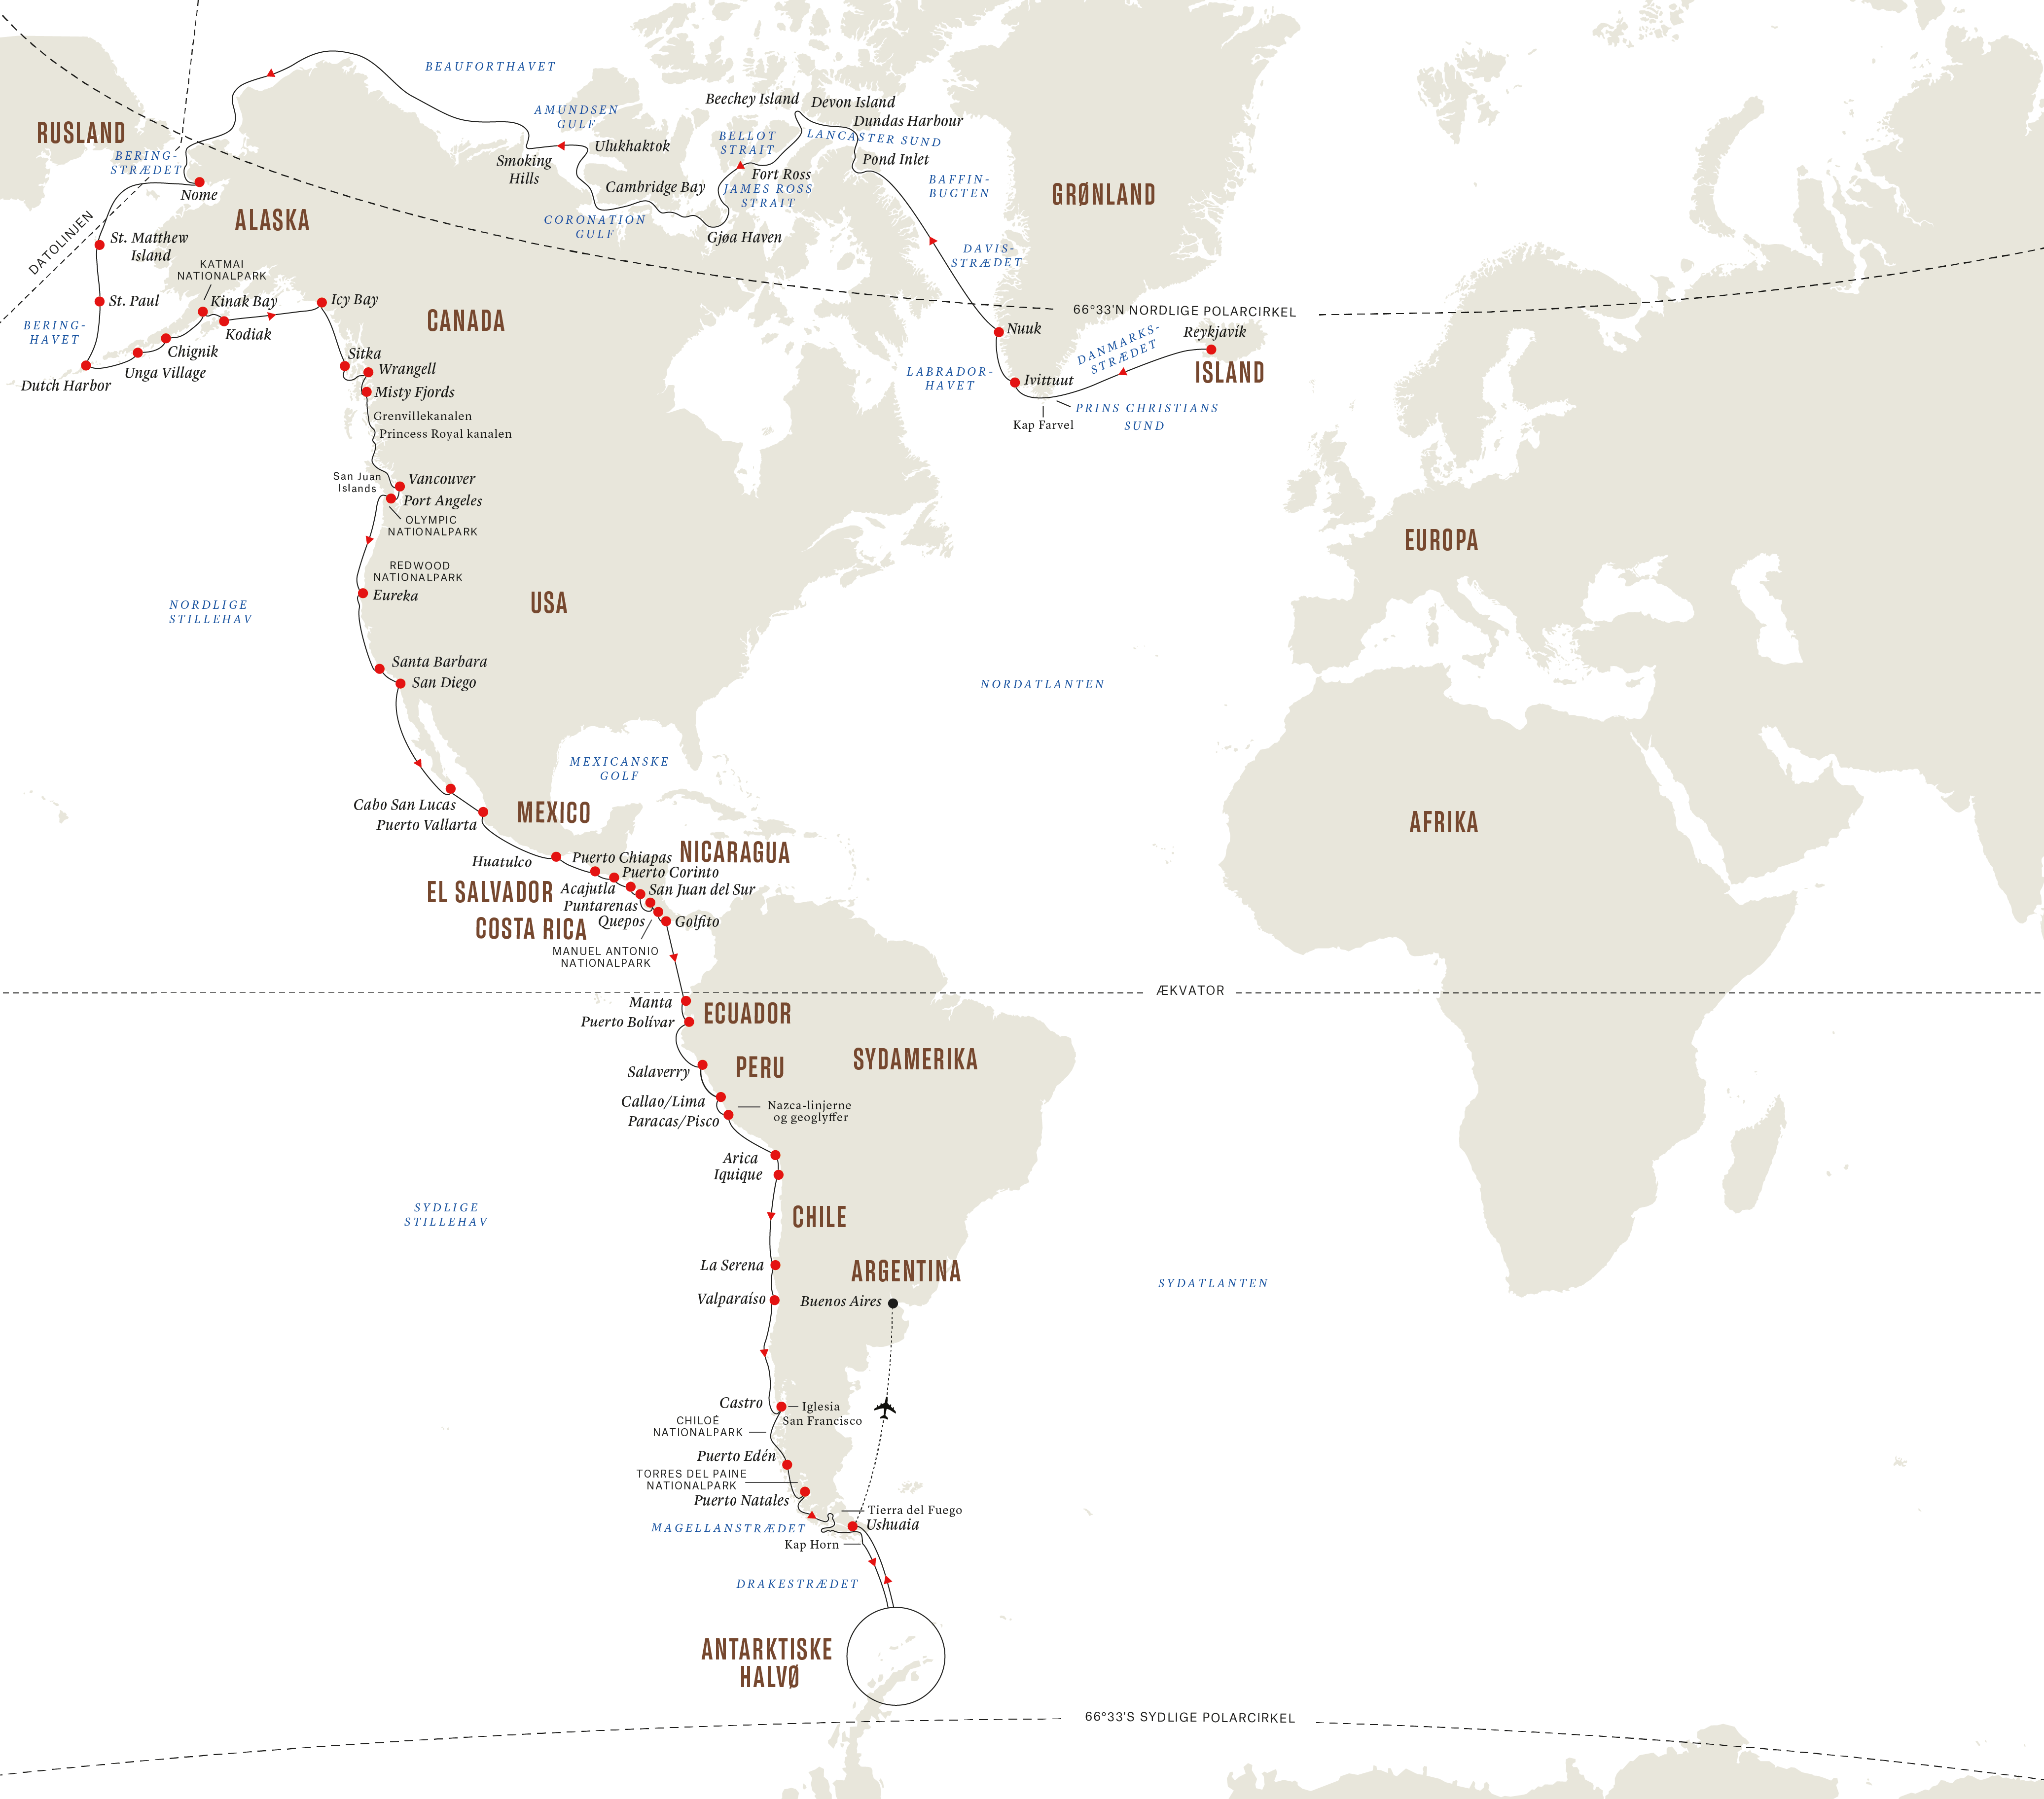 Eventyrrejse pol til | Det til Antarktis | Hurtigruten Expeditions